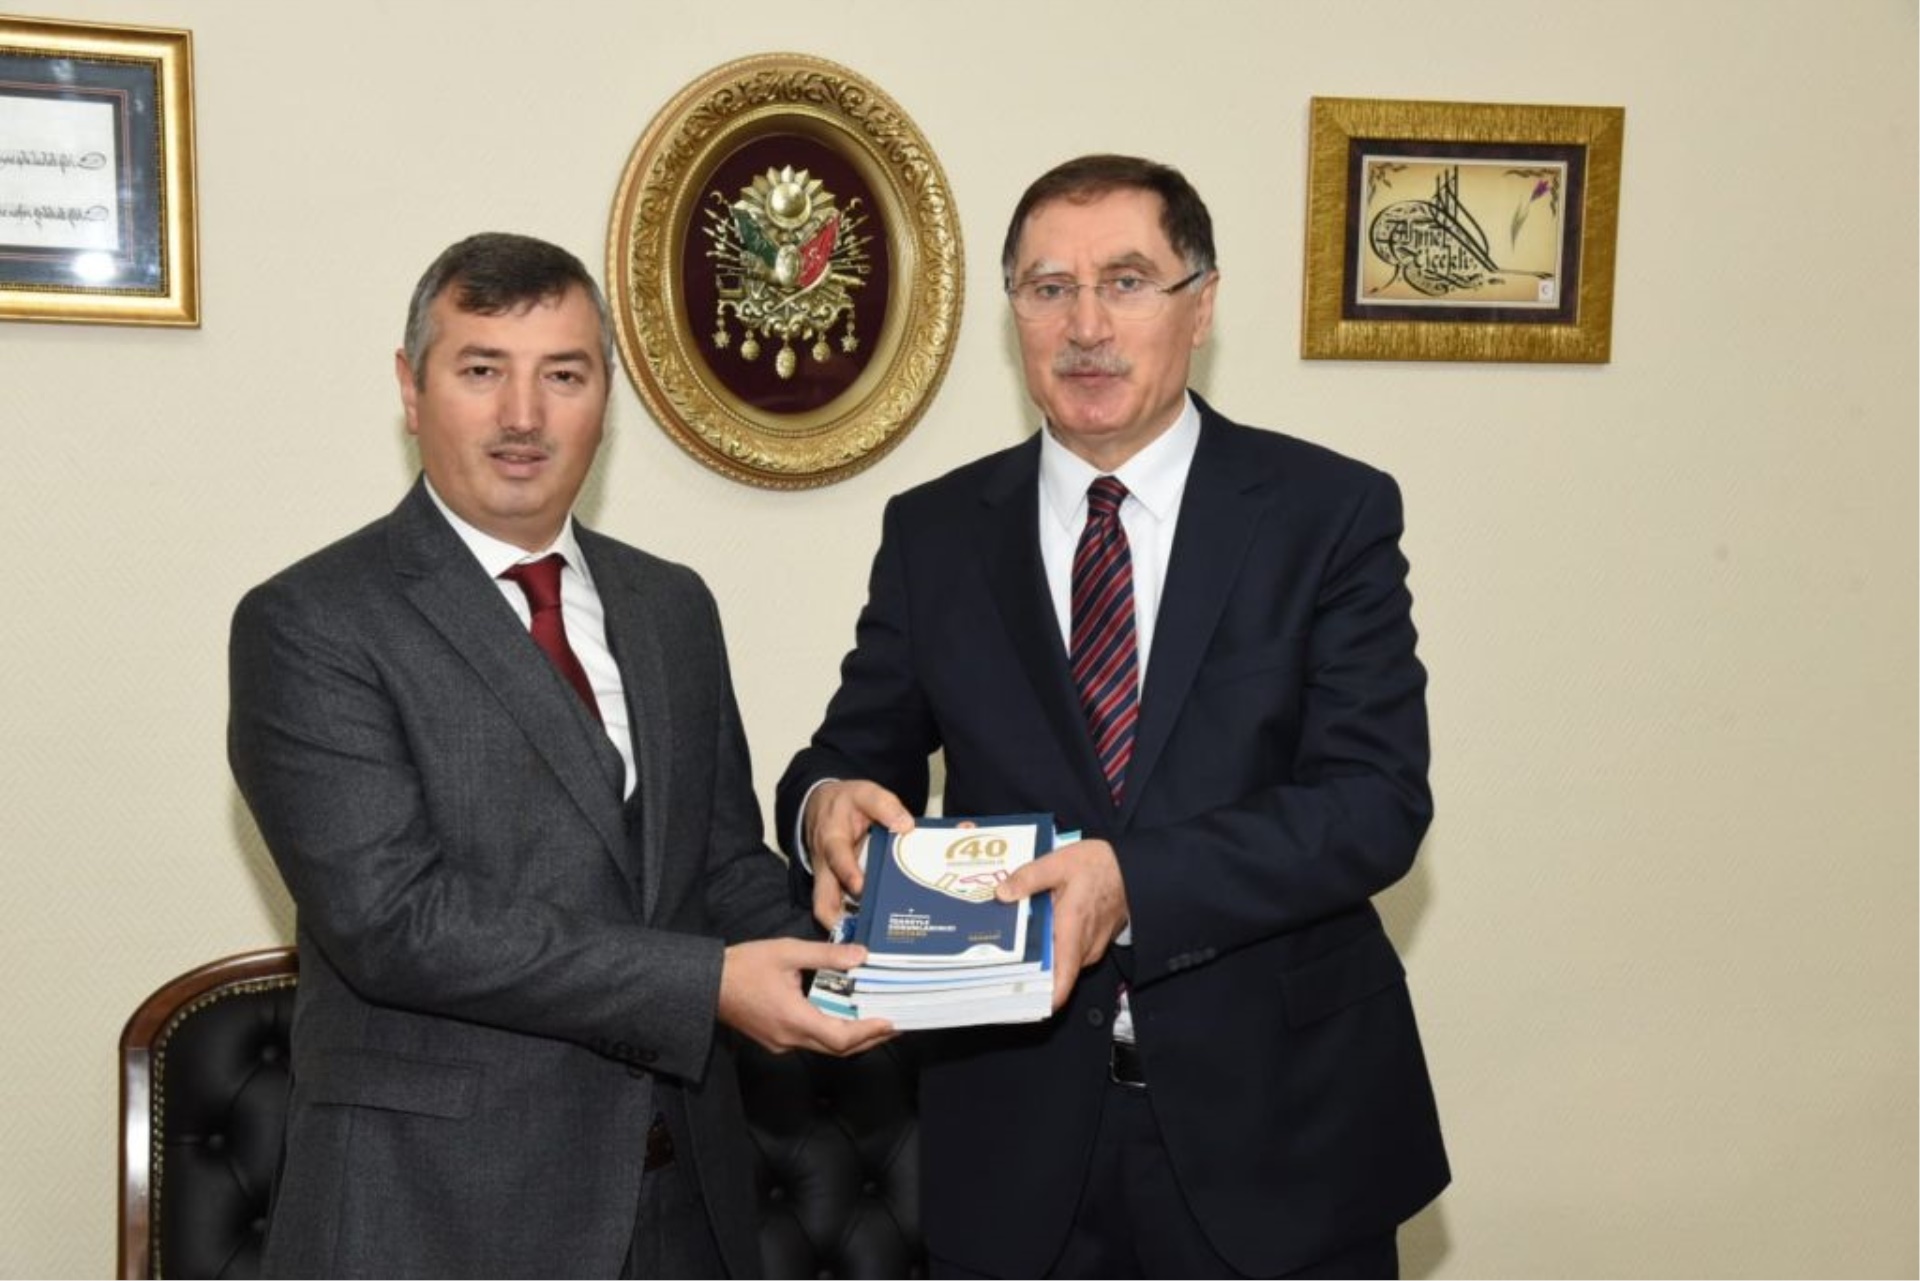 Kamu Başdenetçisi (Ombudsman) Şeref MALKOÇ Manisa Cumhuriyet Başsavcısı Ahmet ÇİÇEKLİ’yi ziyareti.